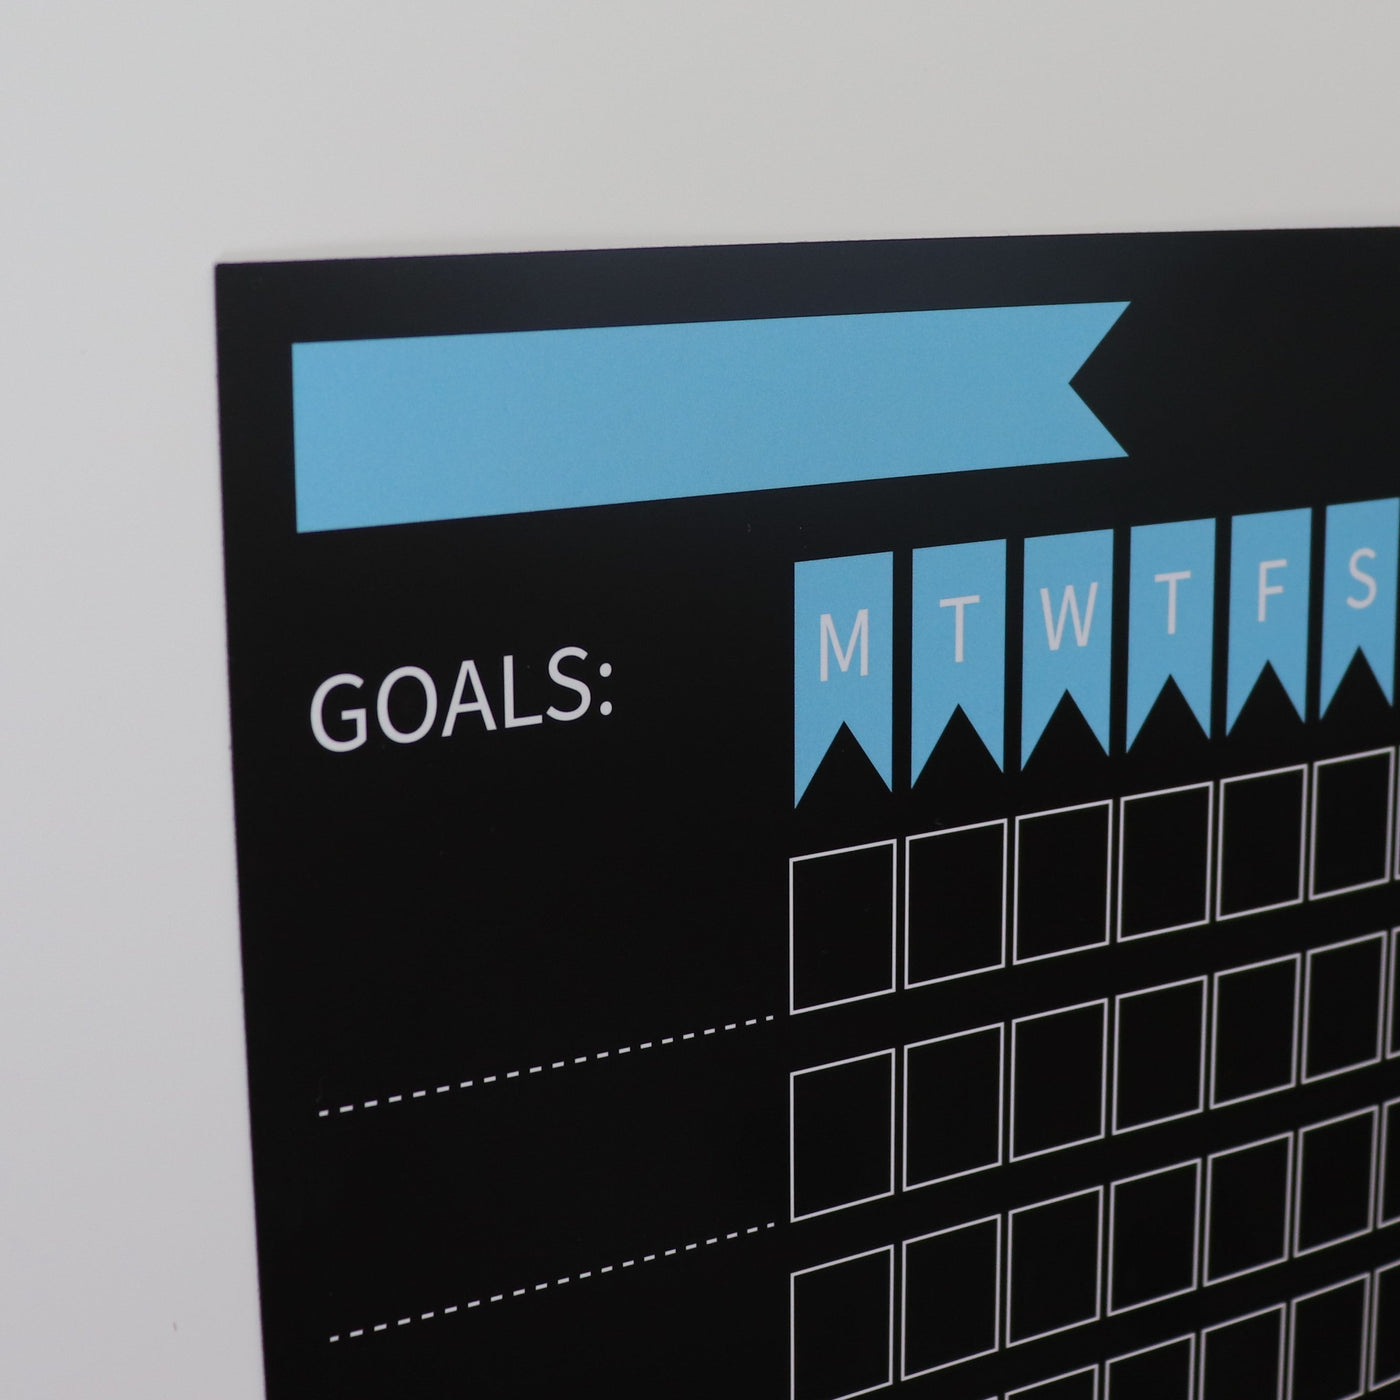 Siisti Magnetic Fridge Planner - Goal Chart